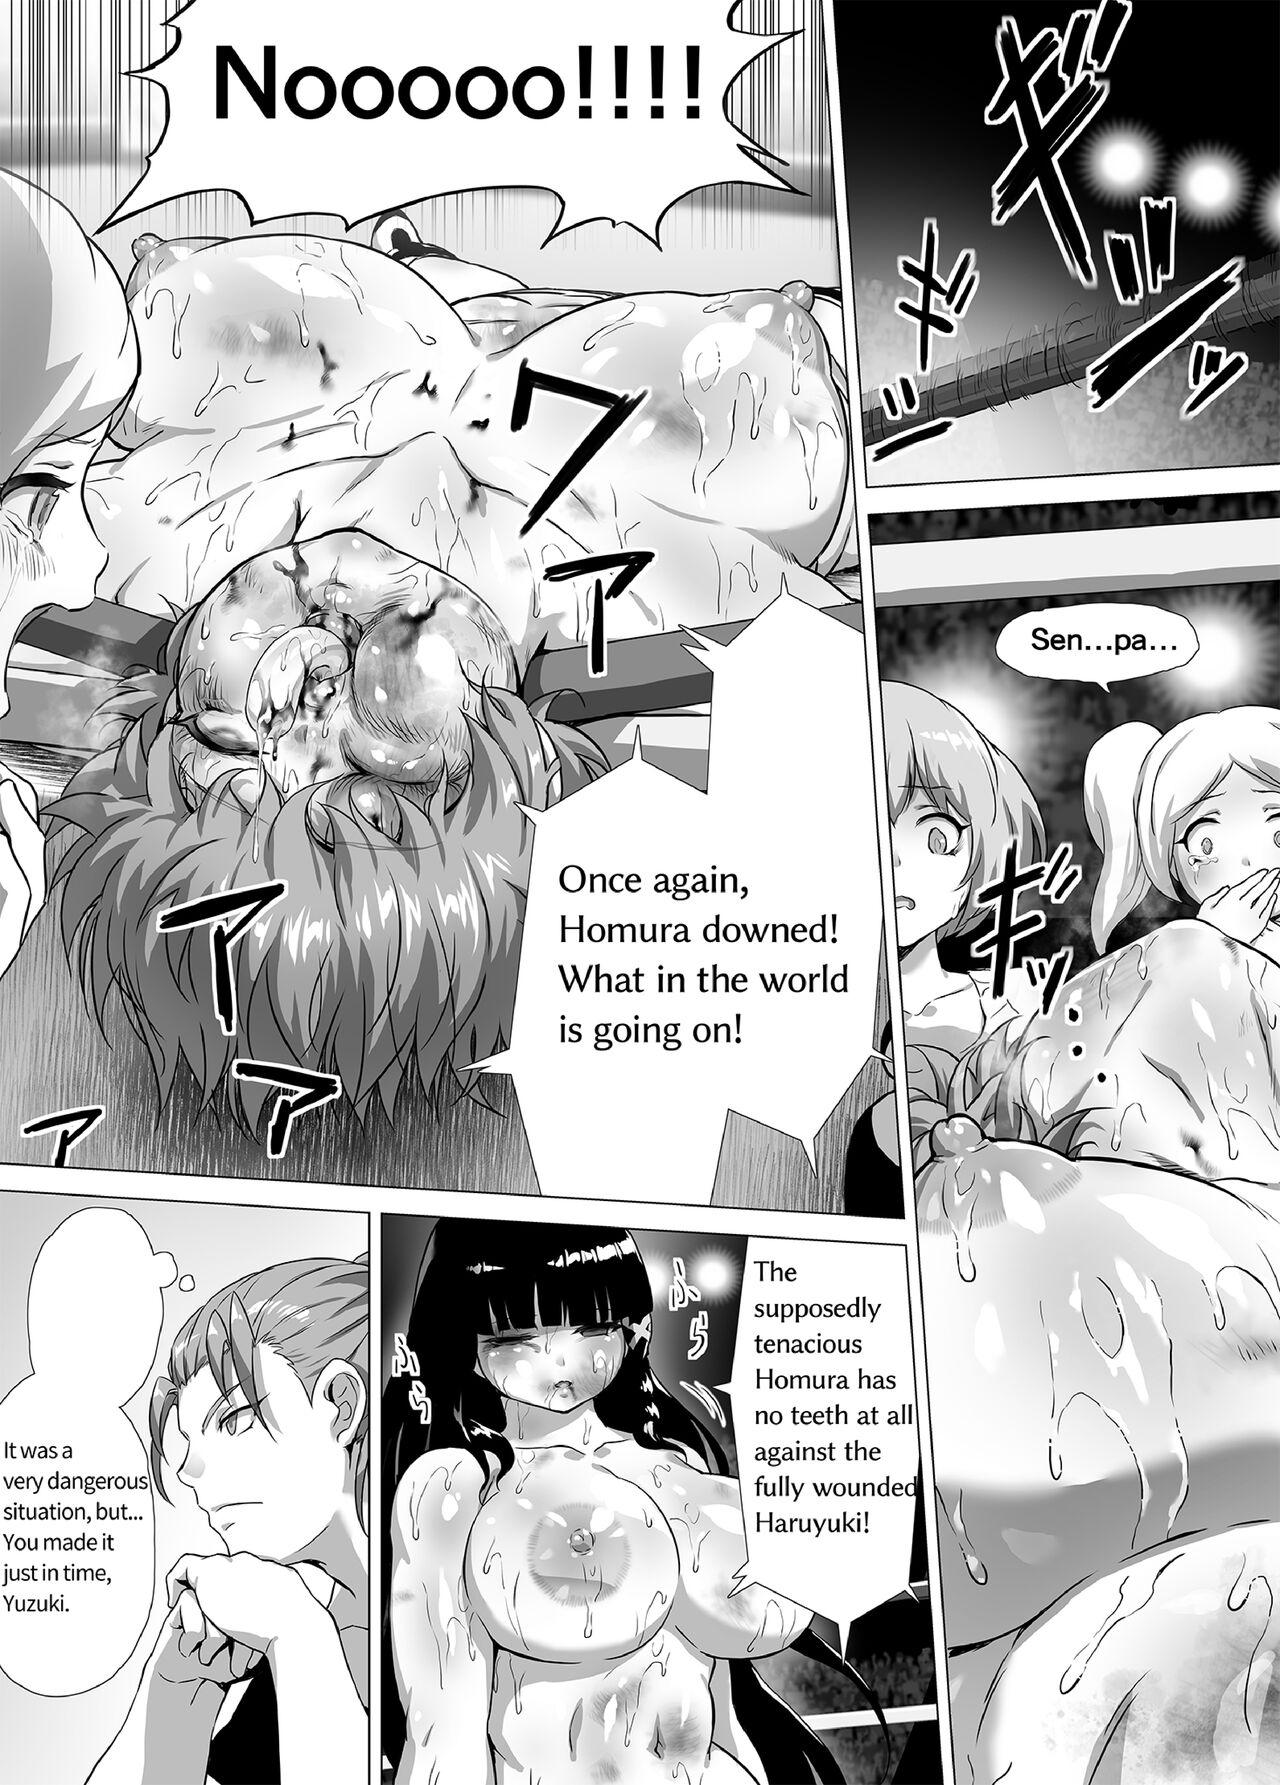 Mahiro STANDUP! Manga Ver. 51